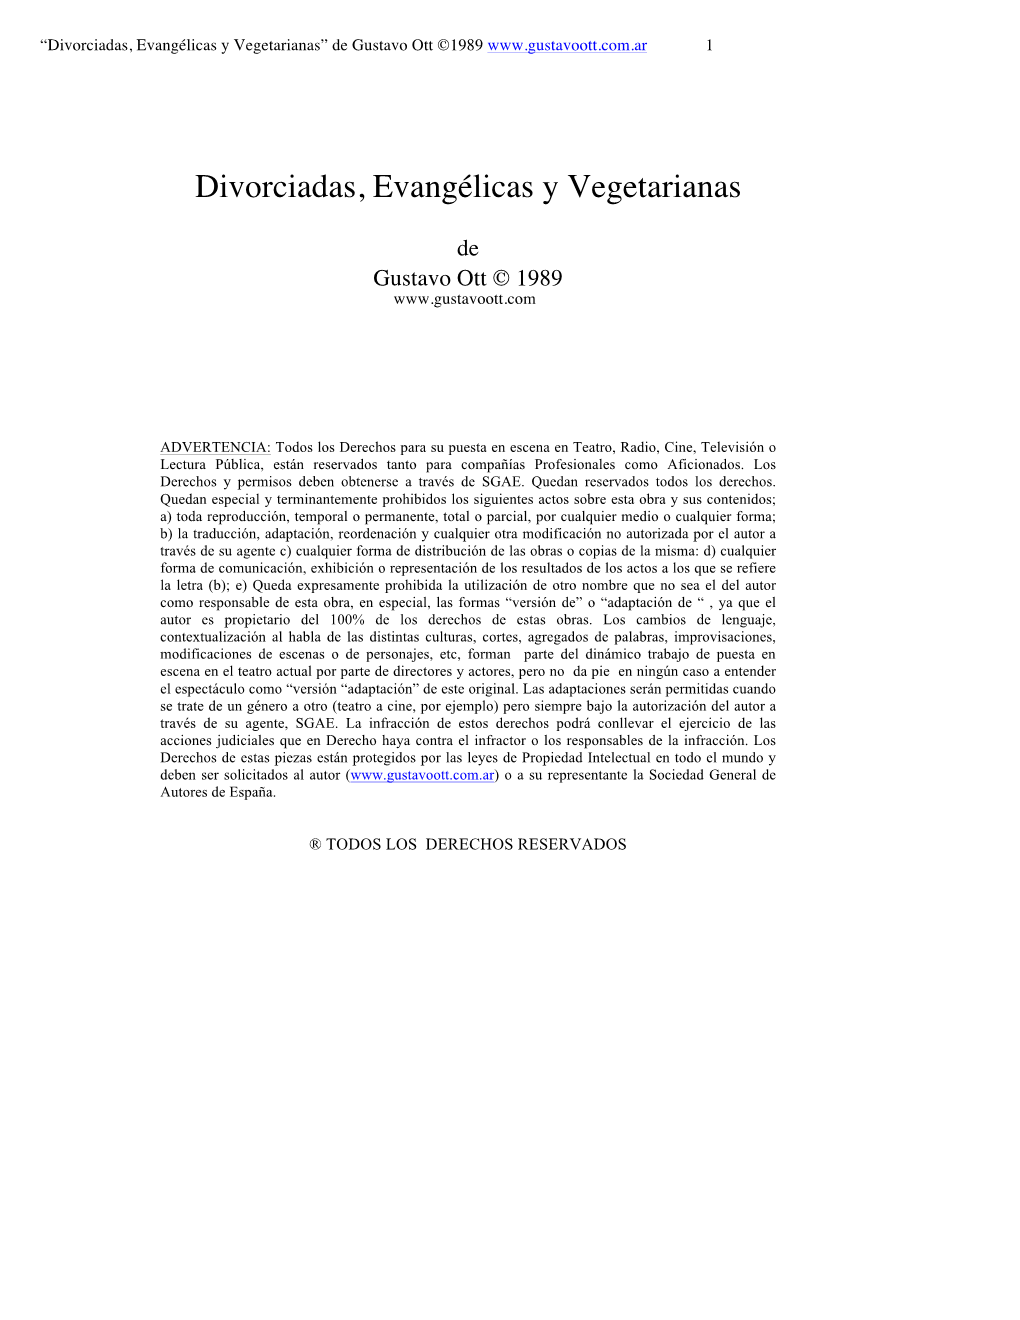 Divorciadas, Evangélicas Y Vegetarianas” De Gustavo Ott ©1989 1